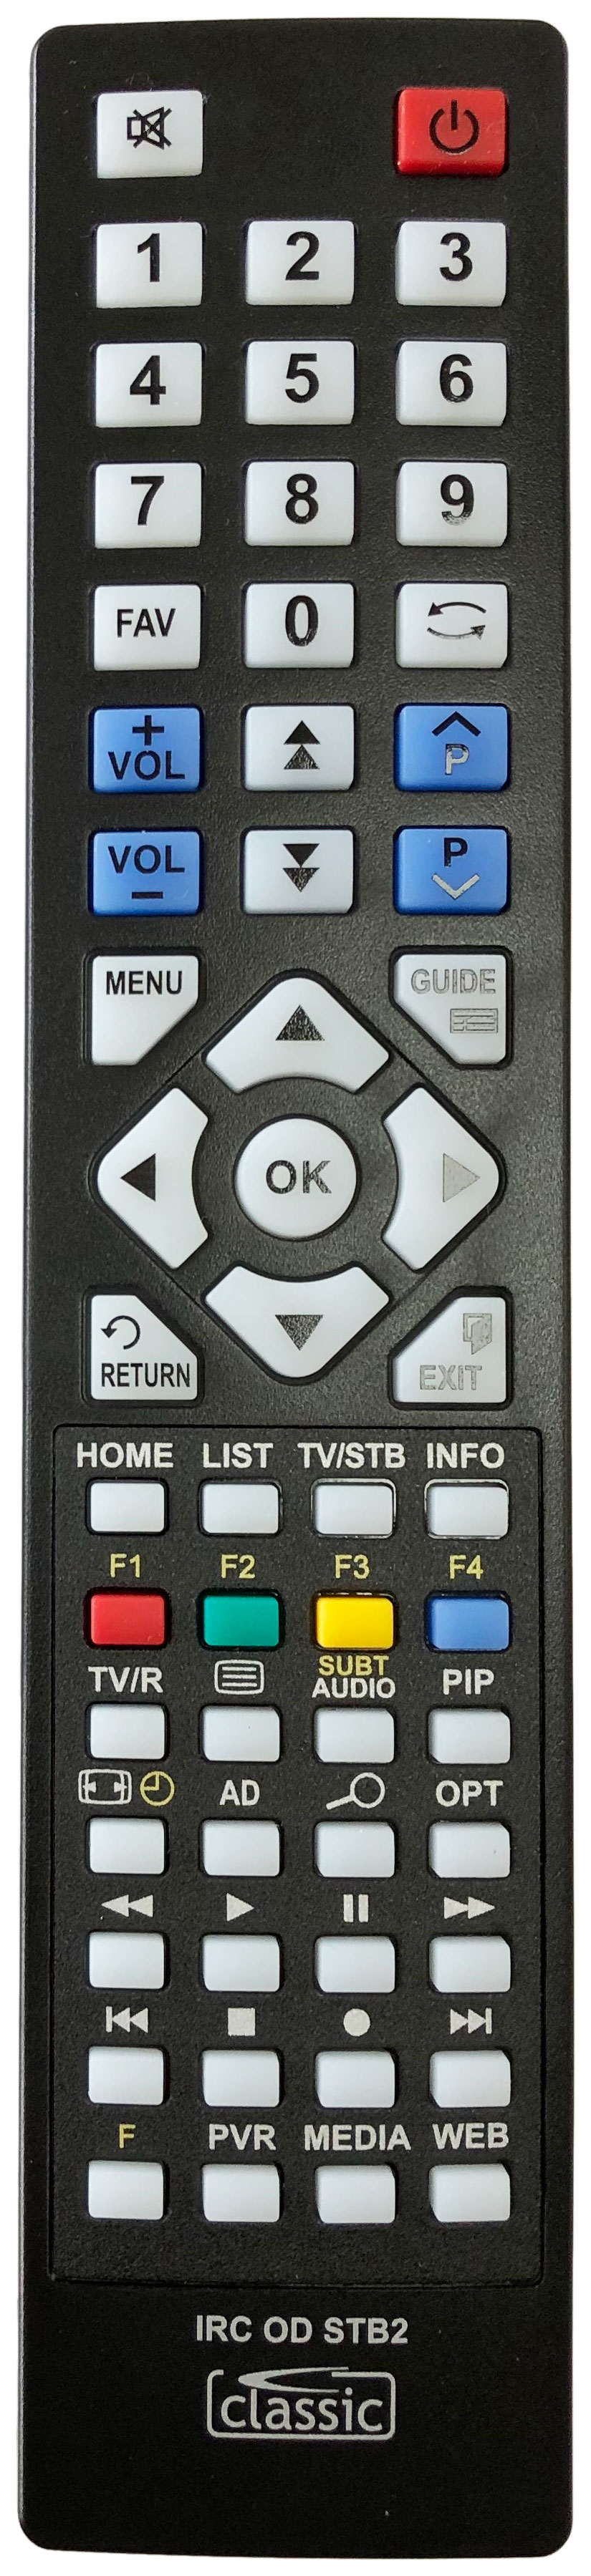 MANHATTAN PLAZA HD-S2 Remote Control